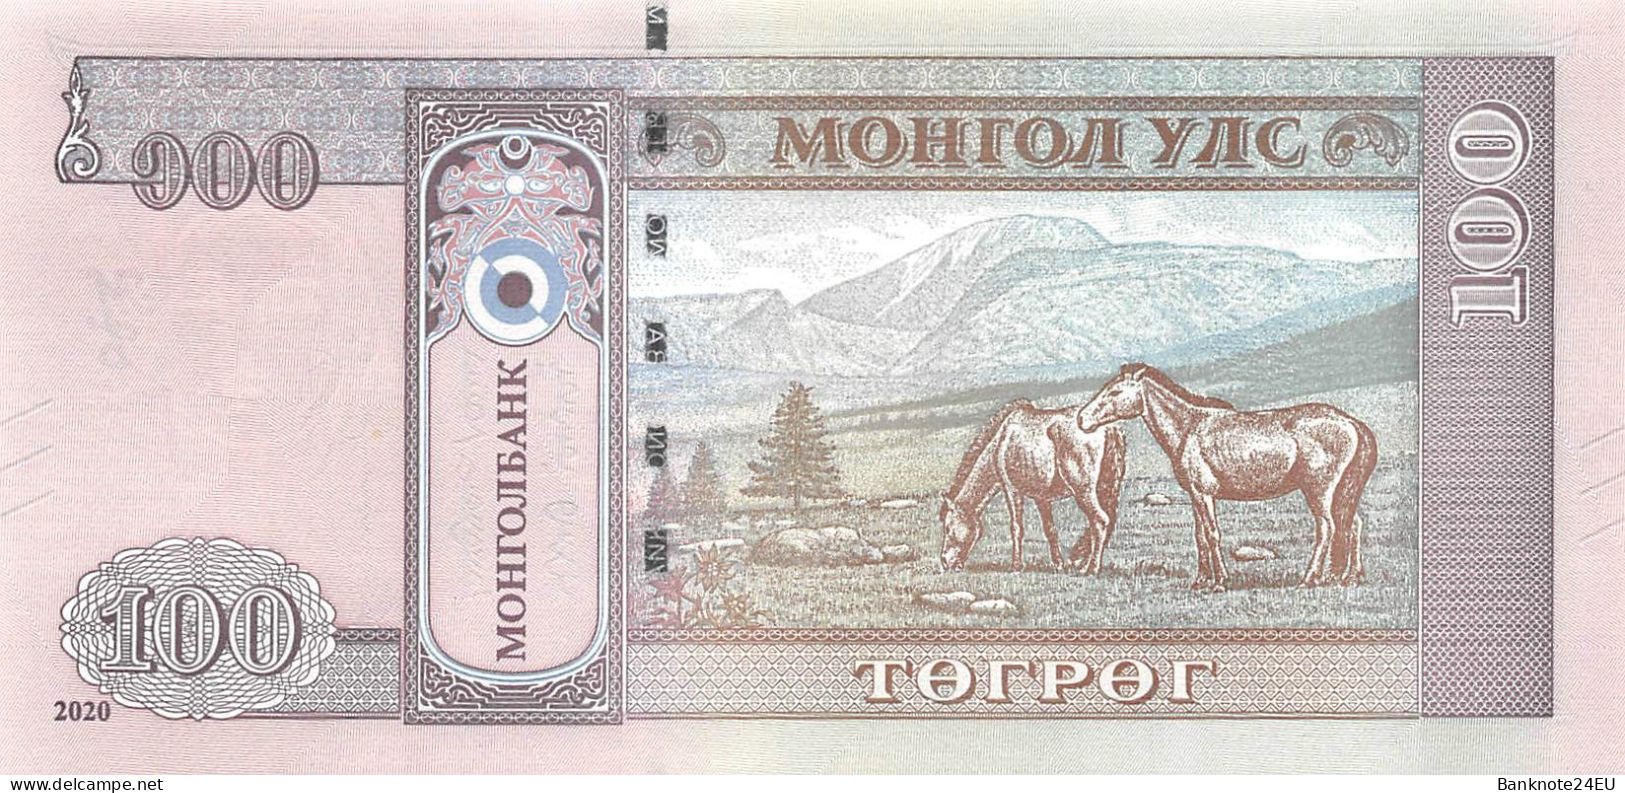 Mongolia 100 Togrog 2020 Unc Pn 73a - Mongolie